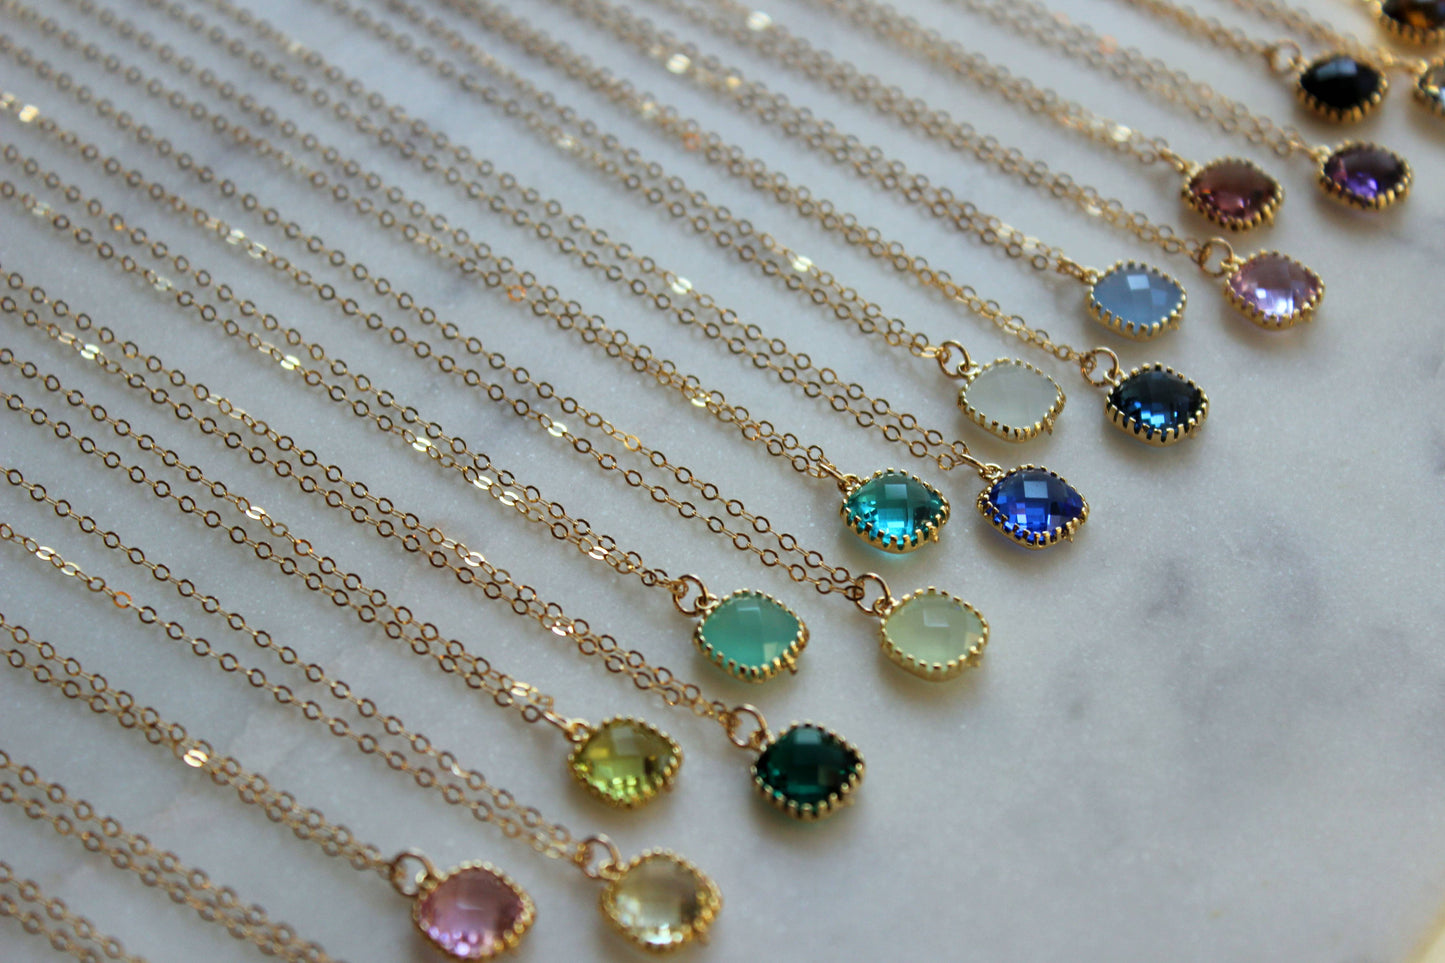 Laalee Jewelry - Gemstone Glass Necklaces, Dainty Minimalist Necklace